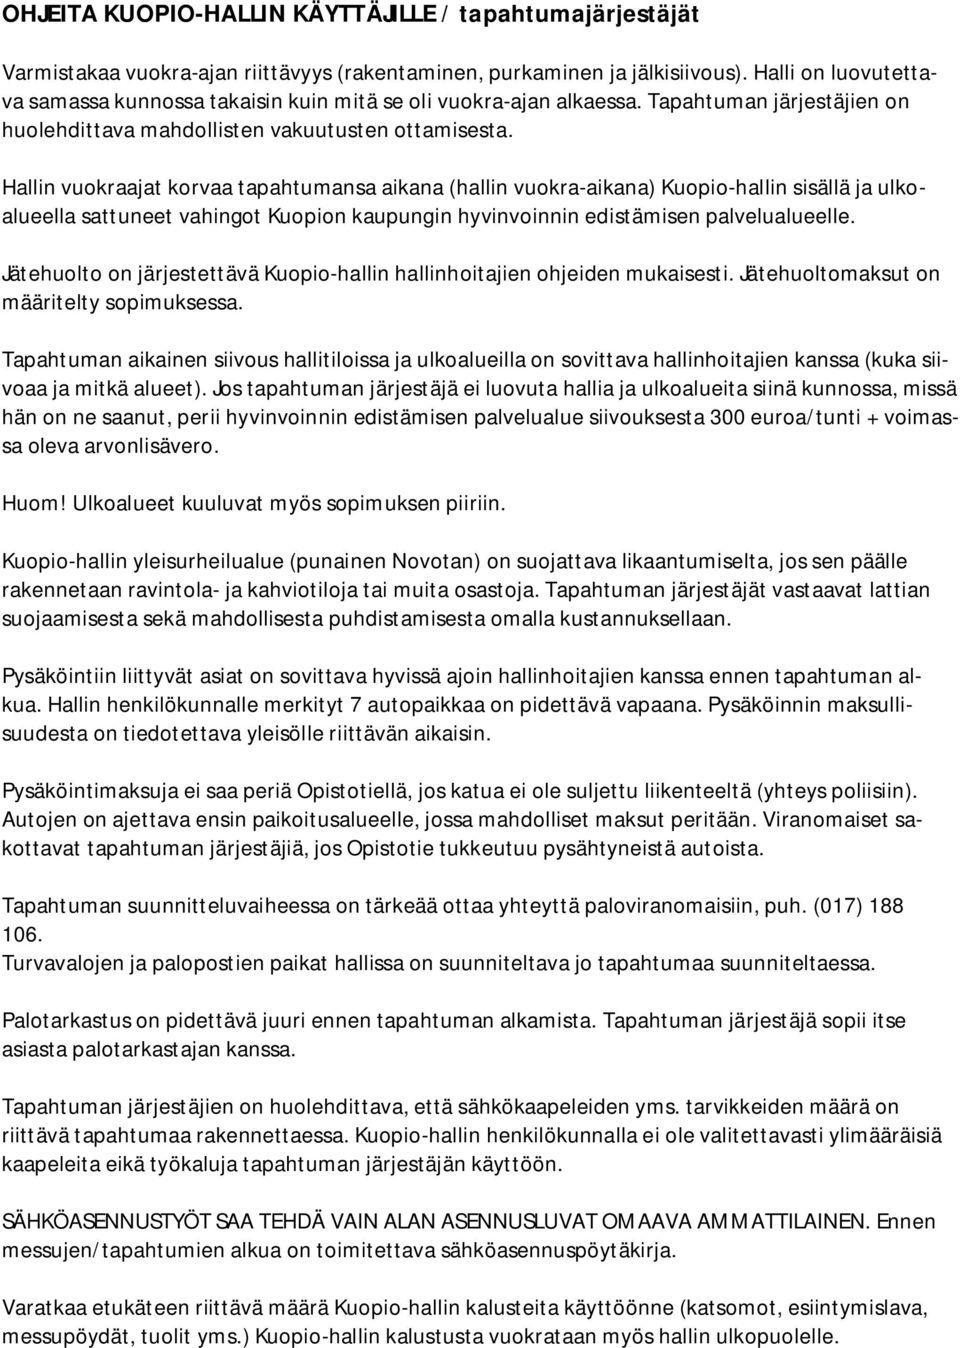 Hallin vuokraajat korvaa tapahtumansa aikana (hallin vuokra-aikana) Kuopio-hallin sisällä ja ulkoalueella sattuneet vahingot Kuopion kaupungin hyvinvoinnin edistämisen palvelualueelle.